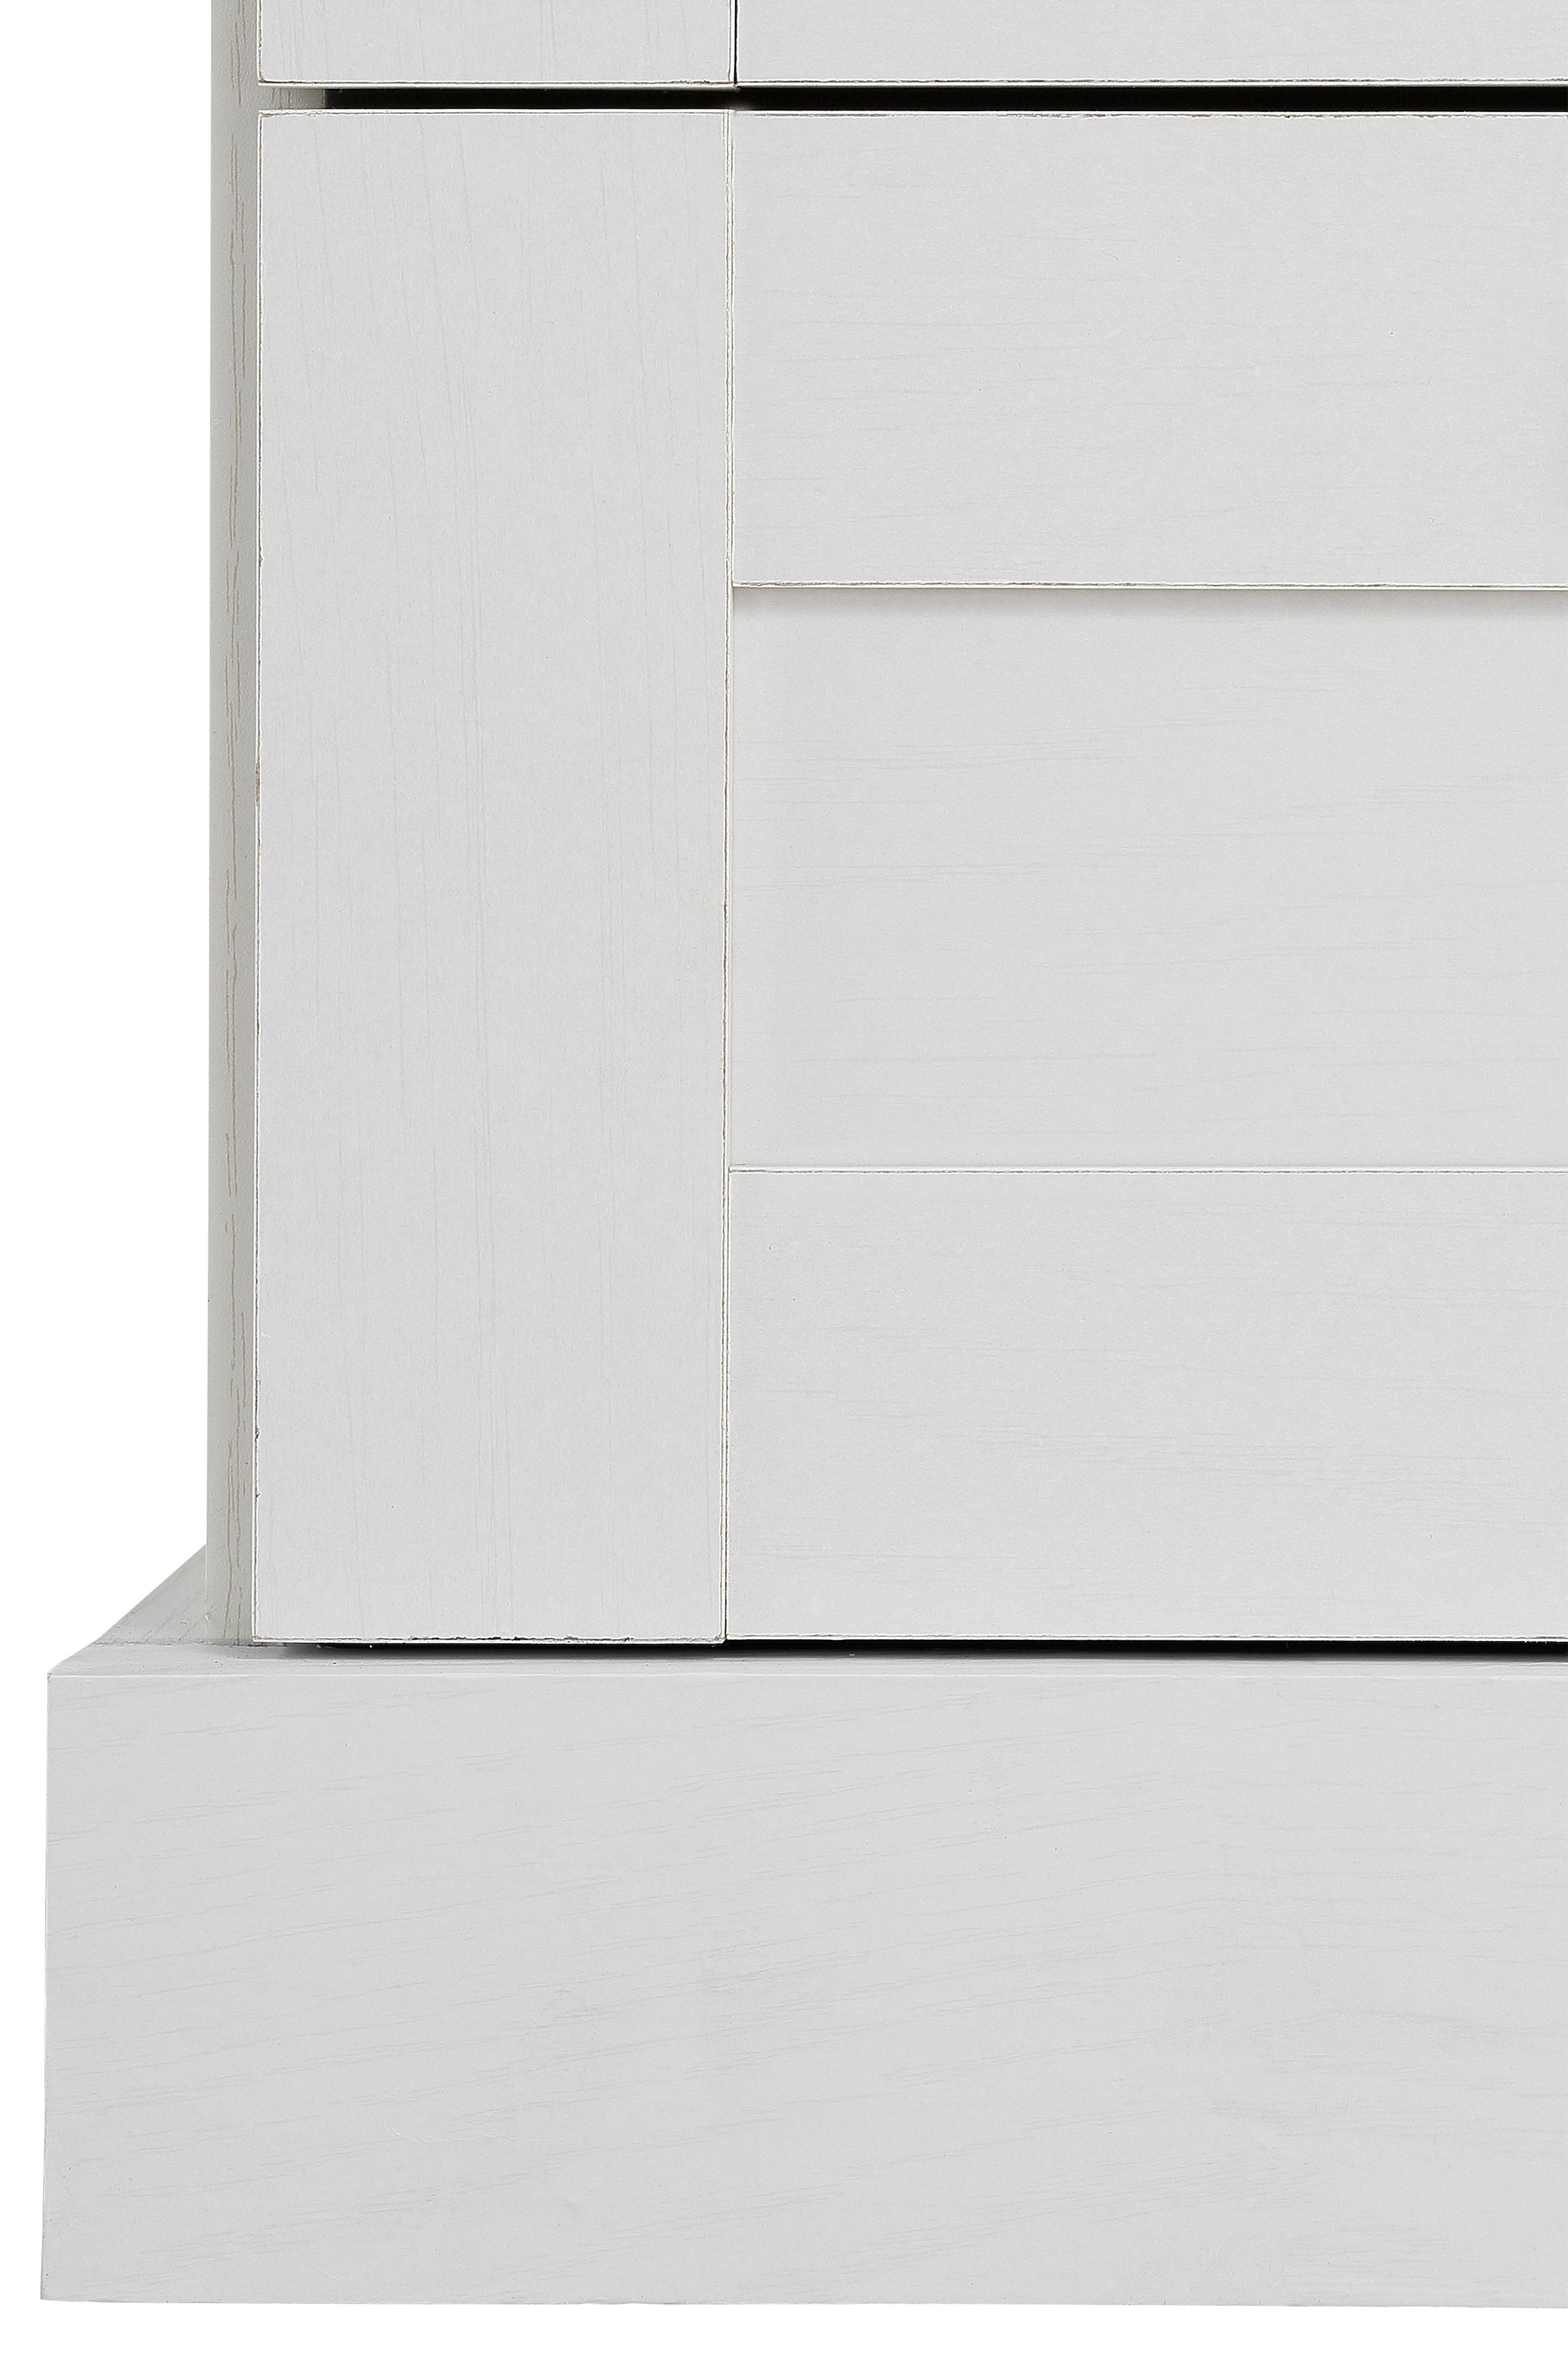 Home affaire Garderobenschrank »Binz«, mit schöner Holzoptik, mit vielen  Stauraummöglichkeiten, Höhe 180 cm bei OTTO